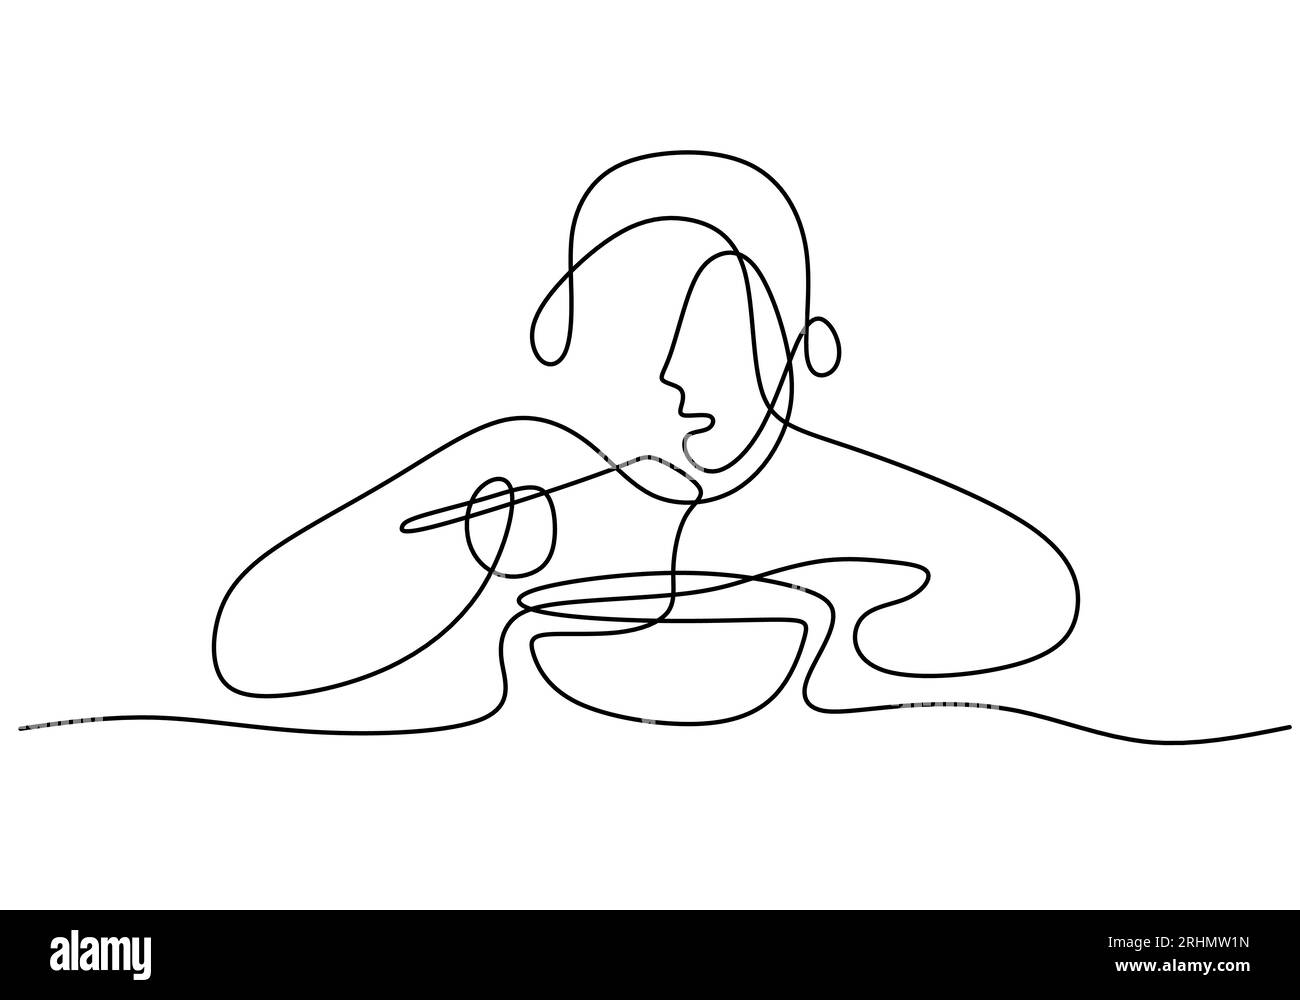 Una singola linea continua di spaghetti che mangiano con bacchette isolate su sfondo bianco. Illustrazione Vettoriale